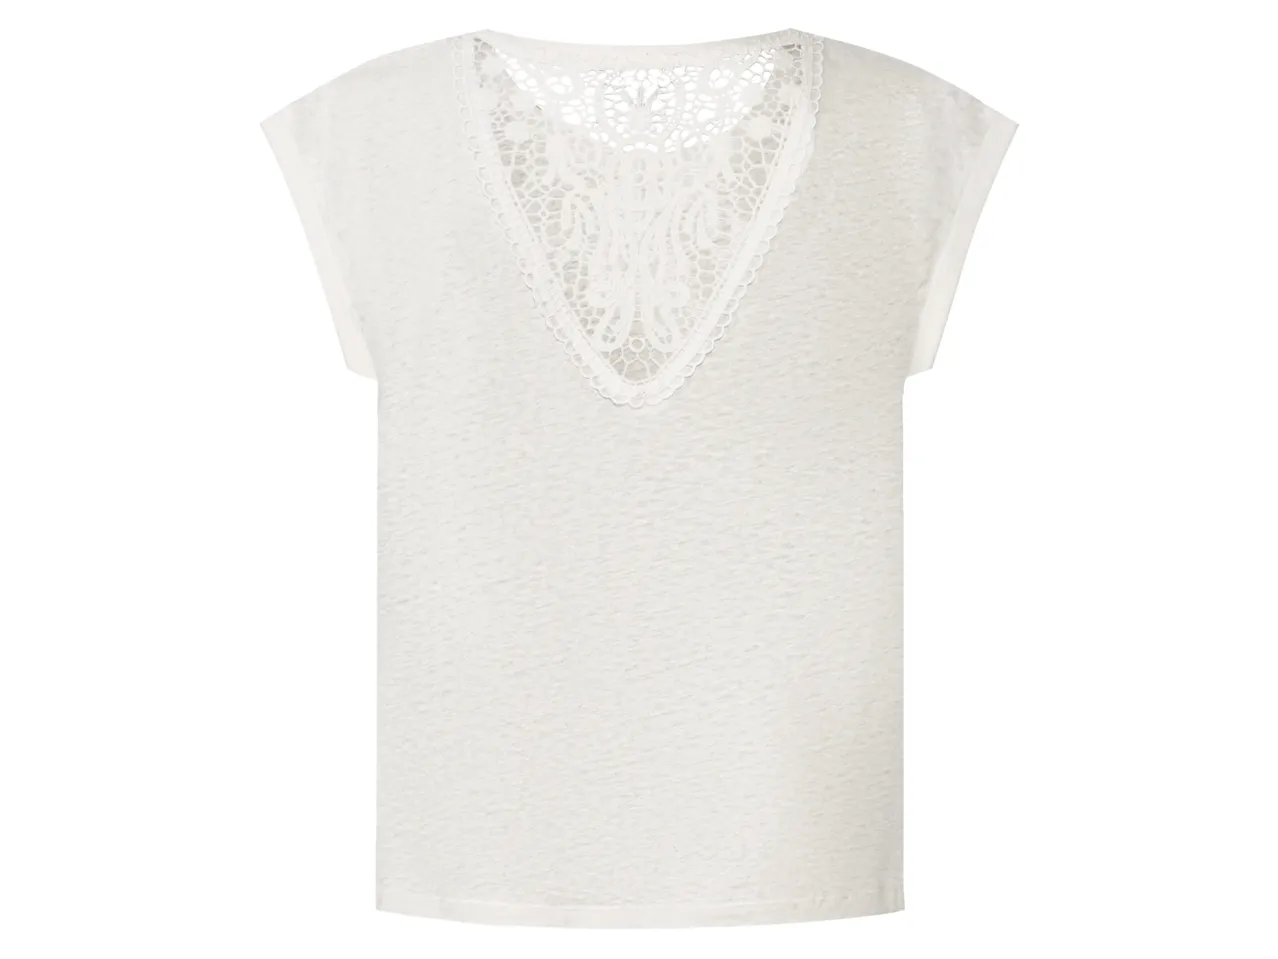 T-Shirt in canapa da donna , prezzo 6.99 EUR 
T-Shirt in canapa da donna Misure: ...